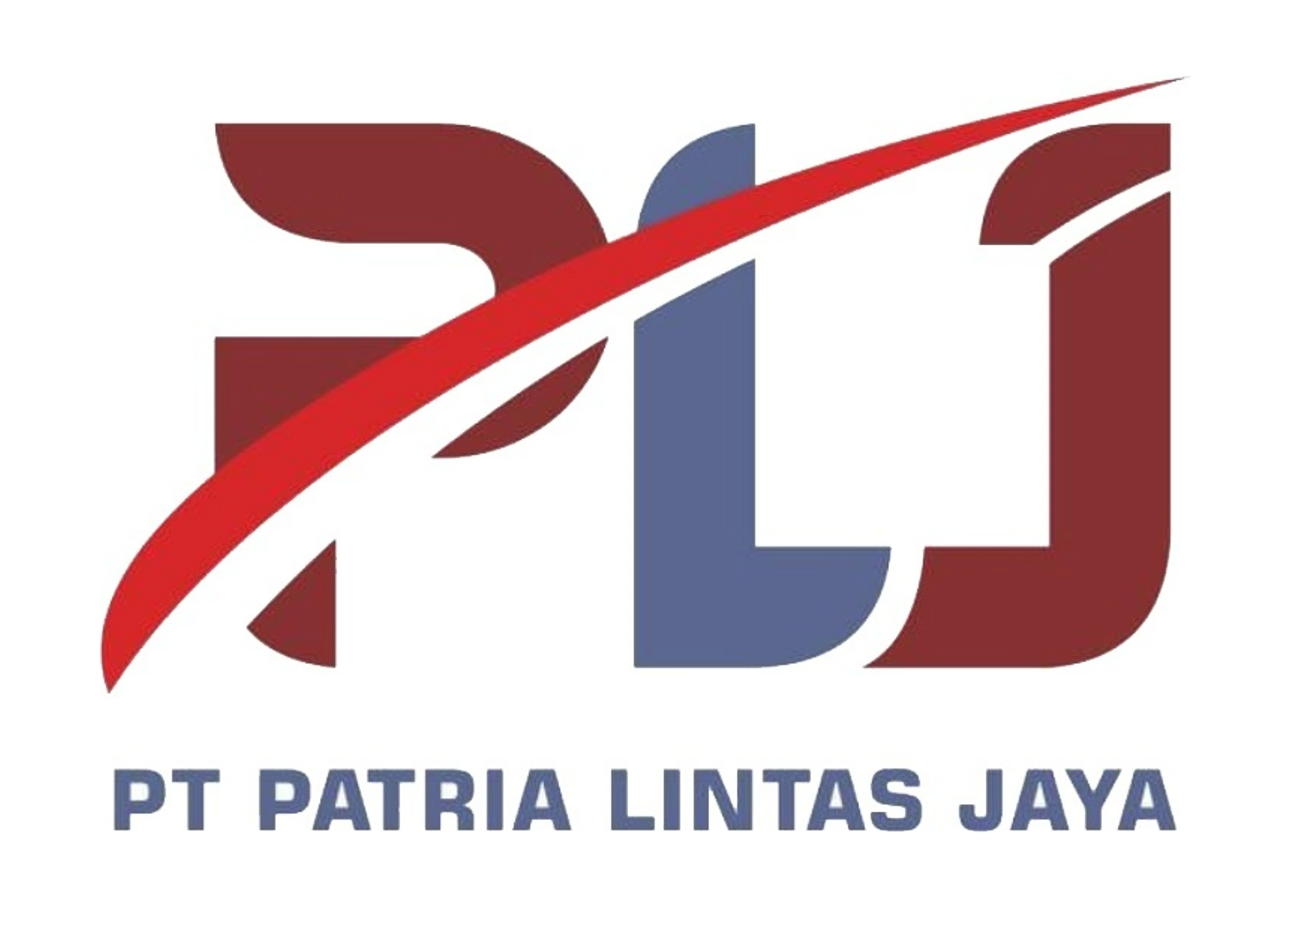 PT. PATRIA LINTAS JAYA